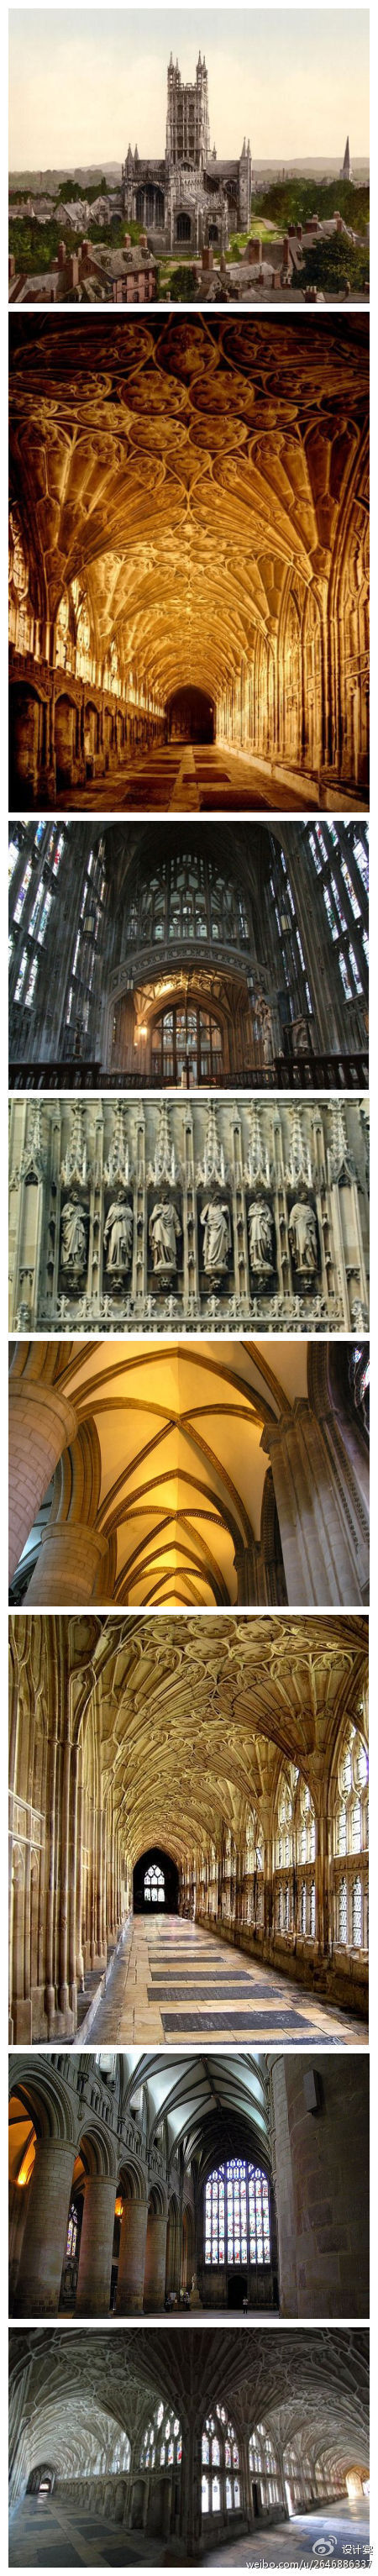 Gloucester Cathedral（格洛斯特大教堂）——英格兰。《哈利·波特》的拍摄地点，你有没有跌入这个魔法世界里